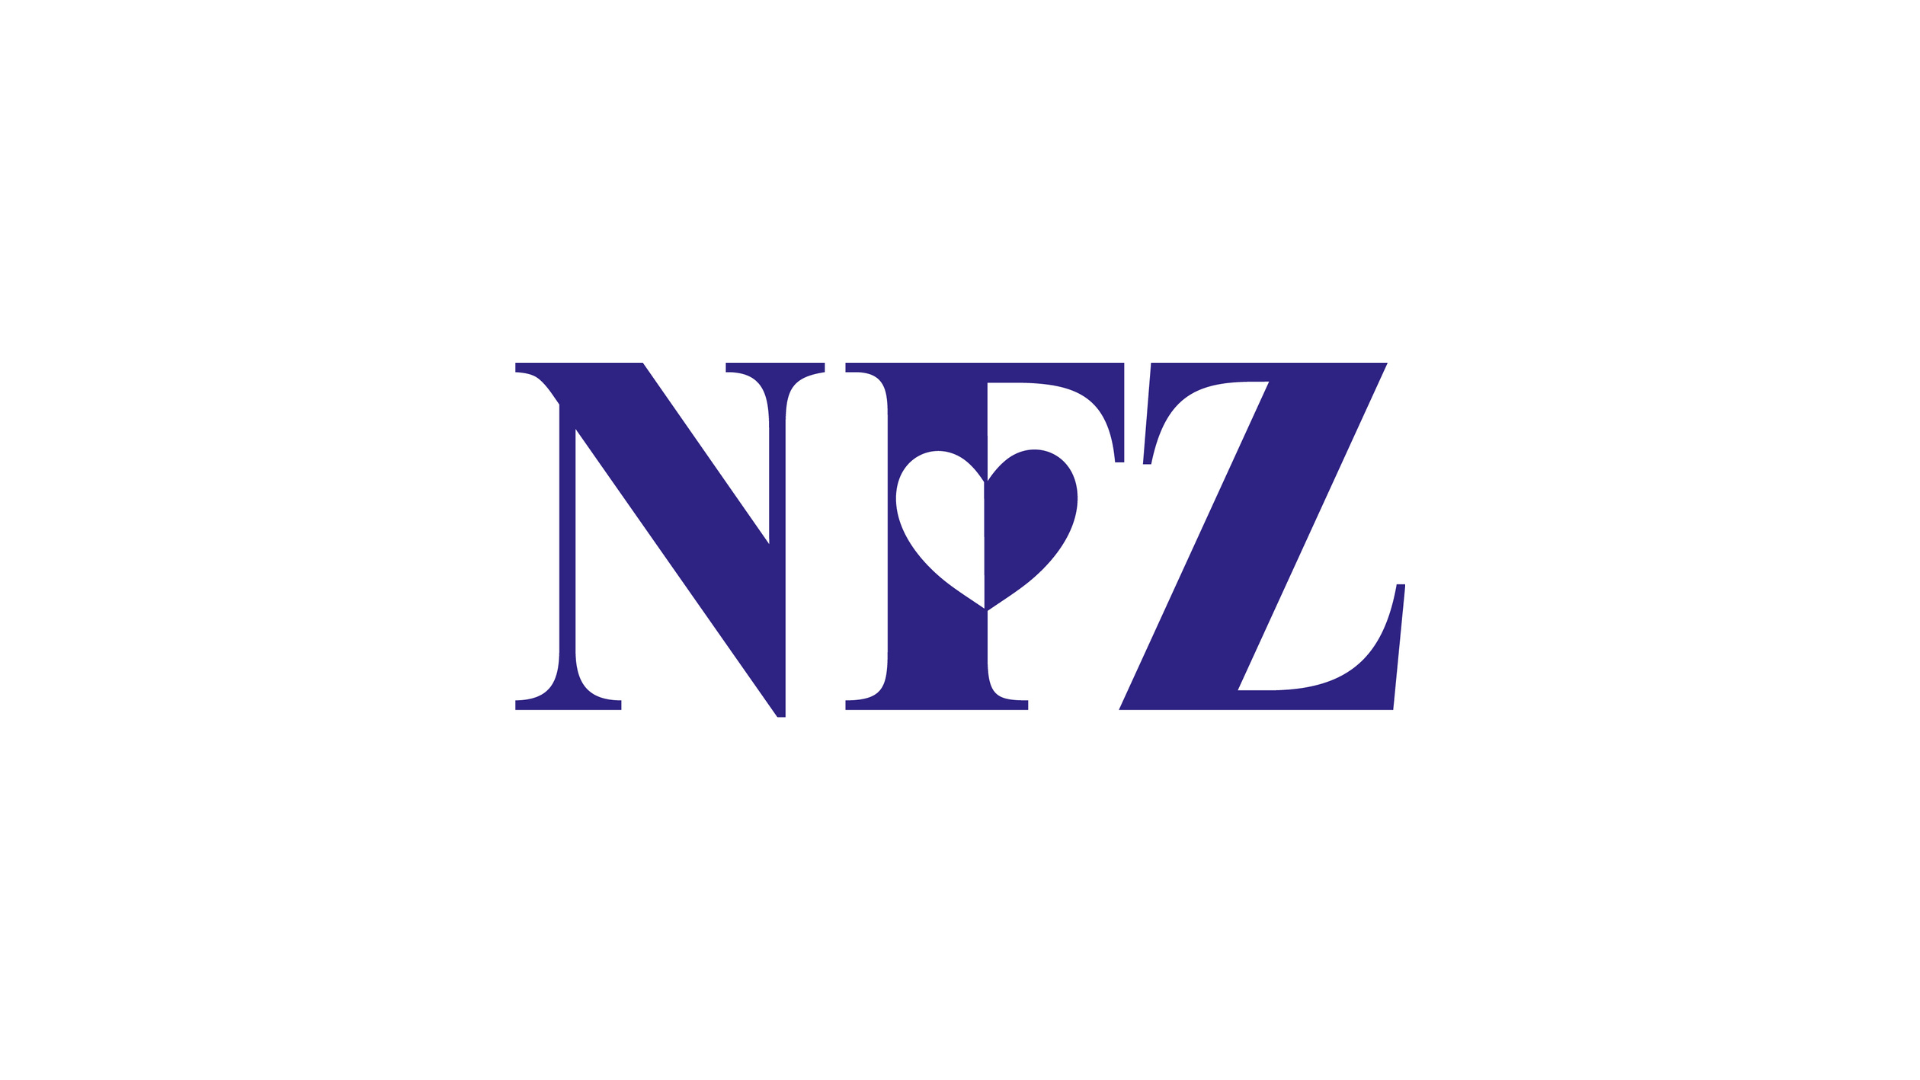 Logo NFZ napisane niebieskimi literami na białym tle